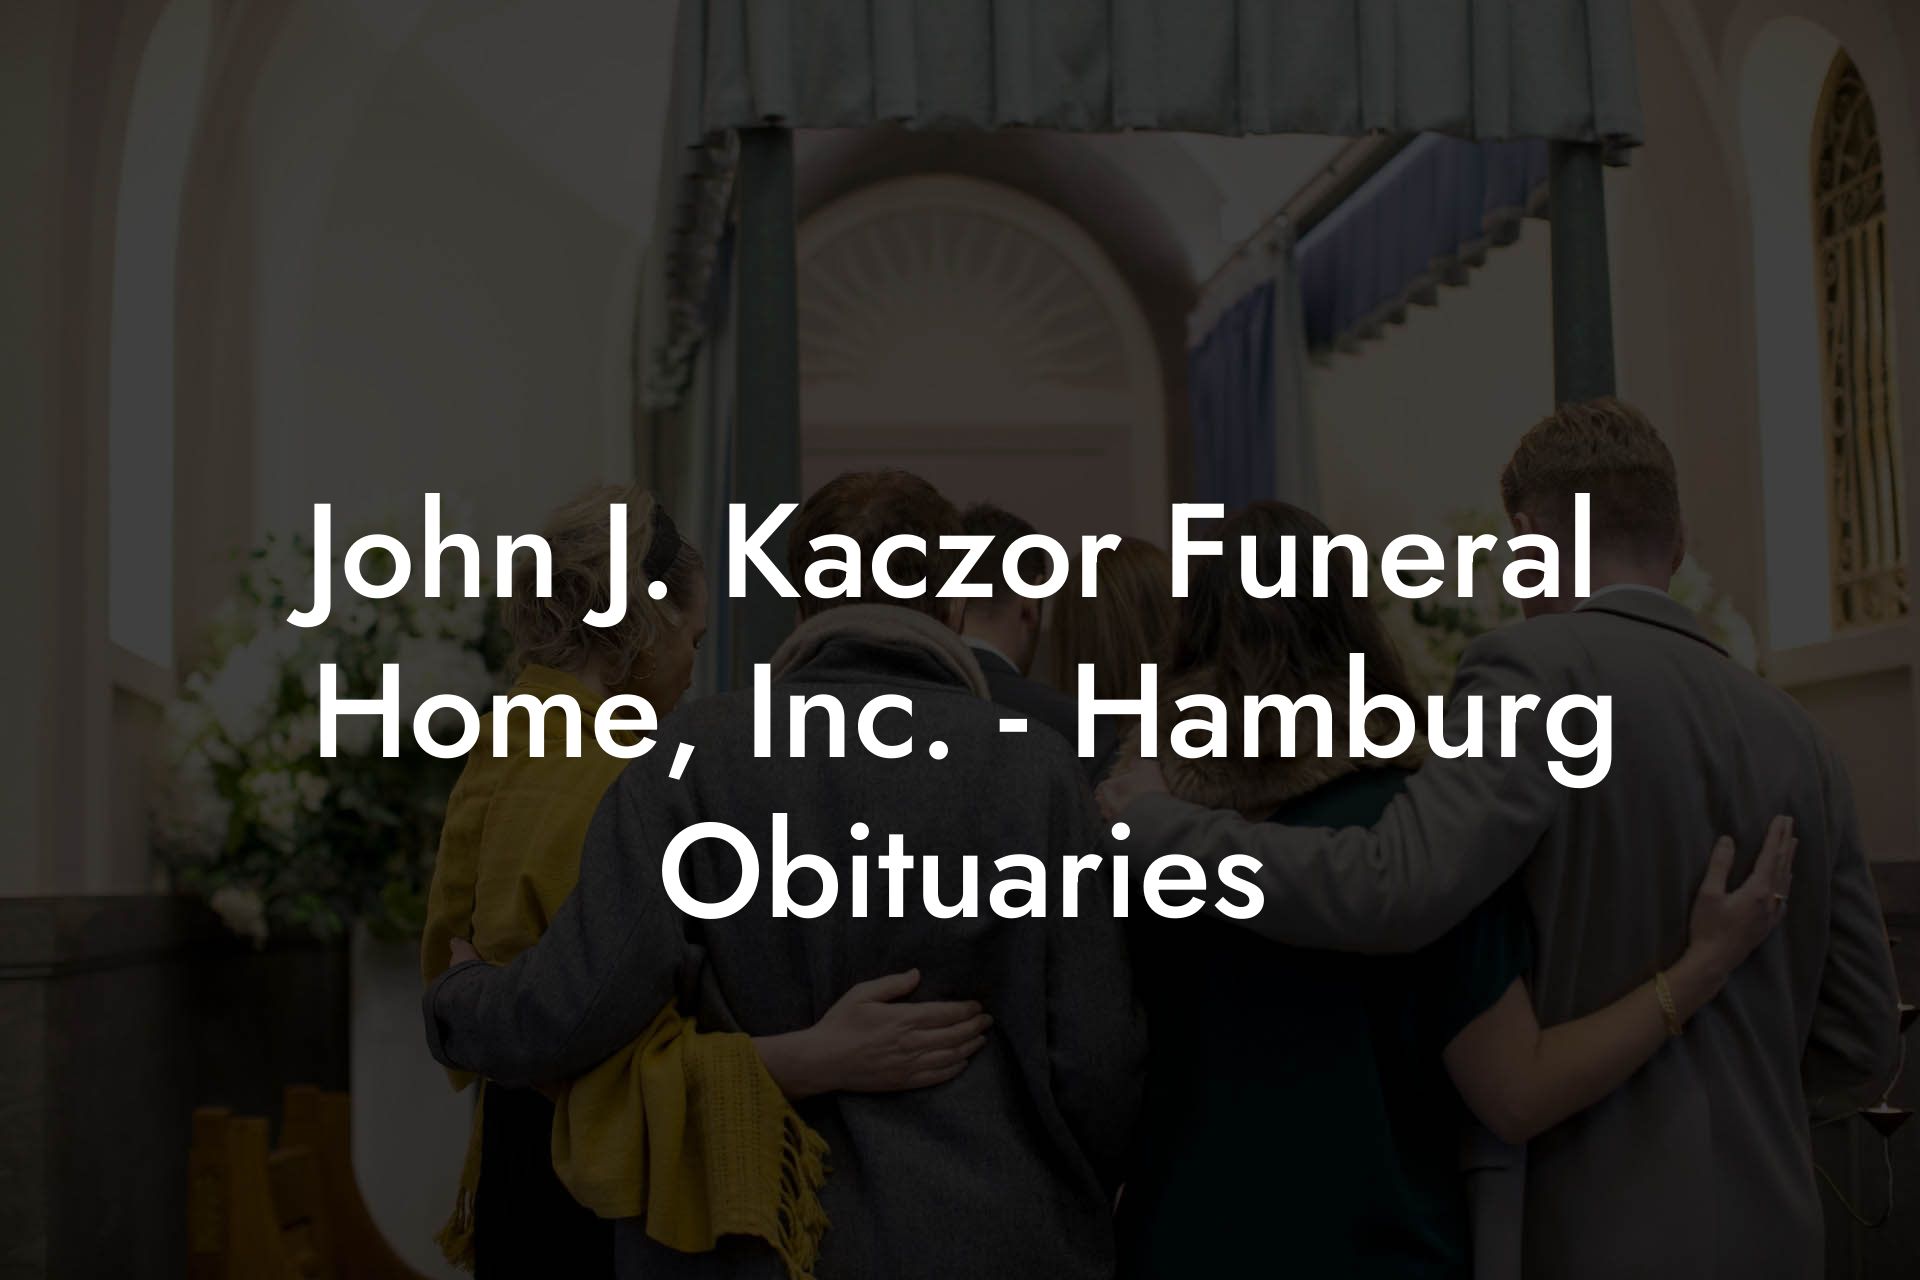 John J. Kaczor Funeral Home, Inc. - Hamburg Obituaries